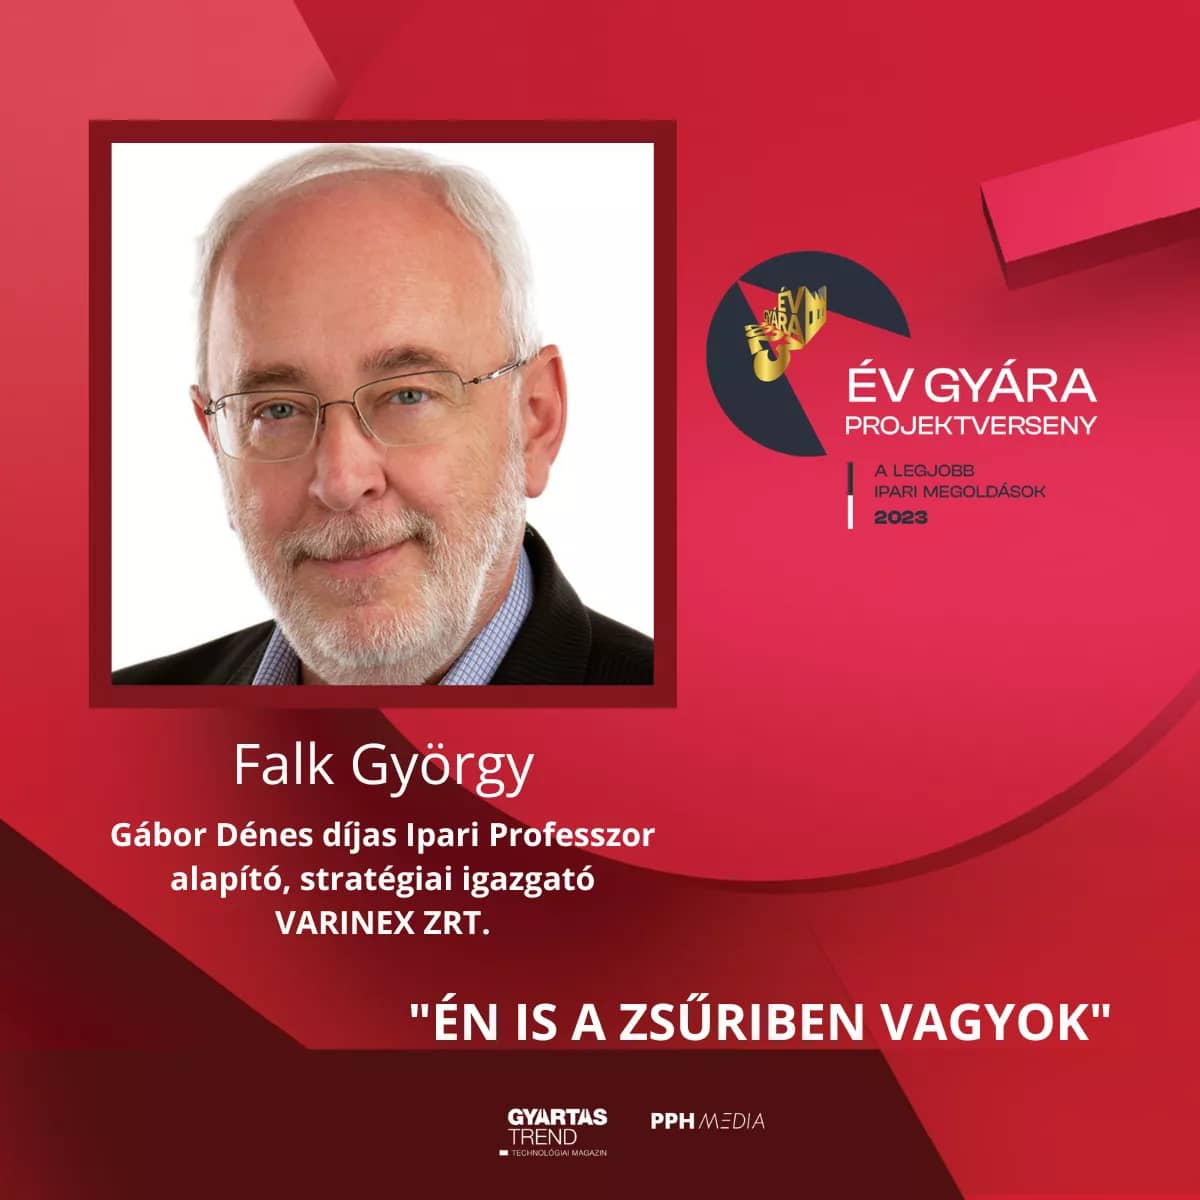 Falk György, az Év Gyára zsűritagja